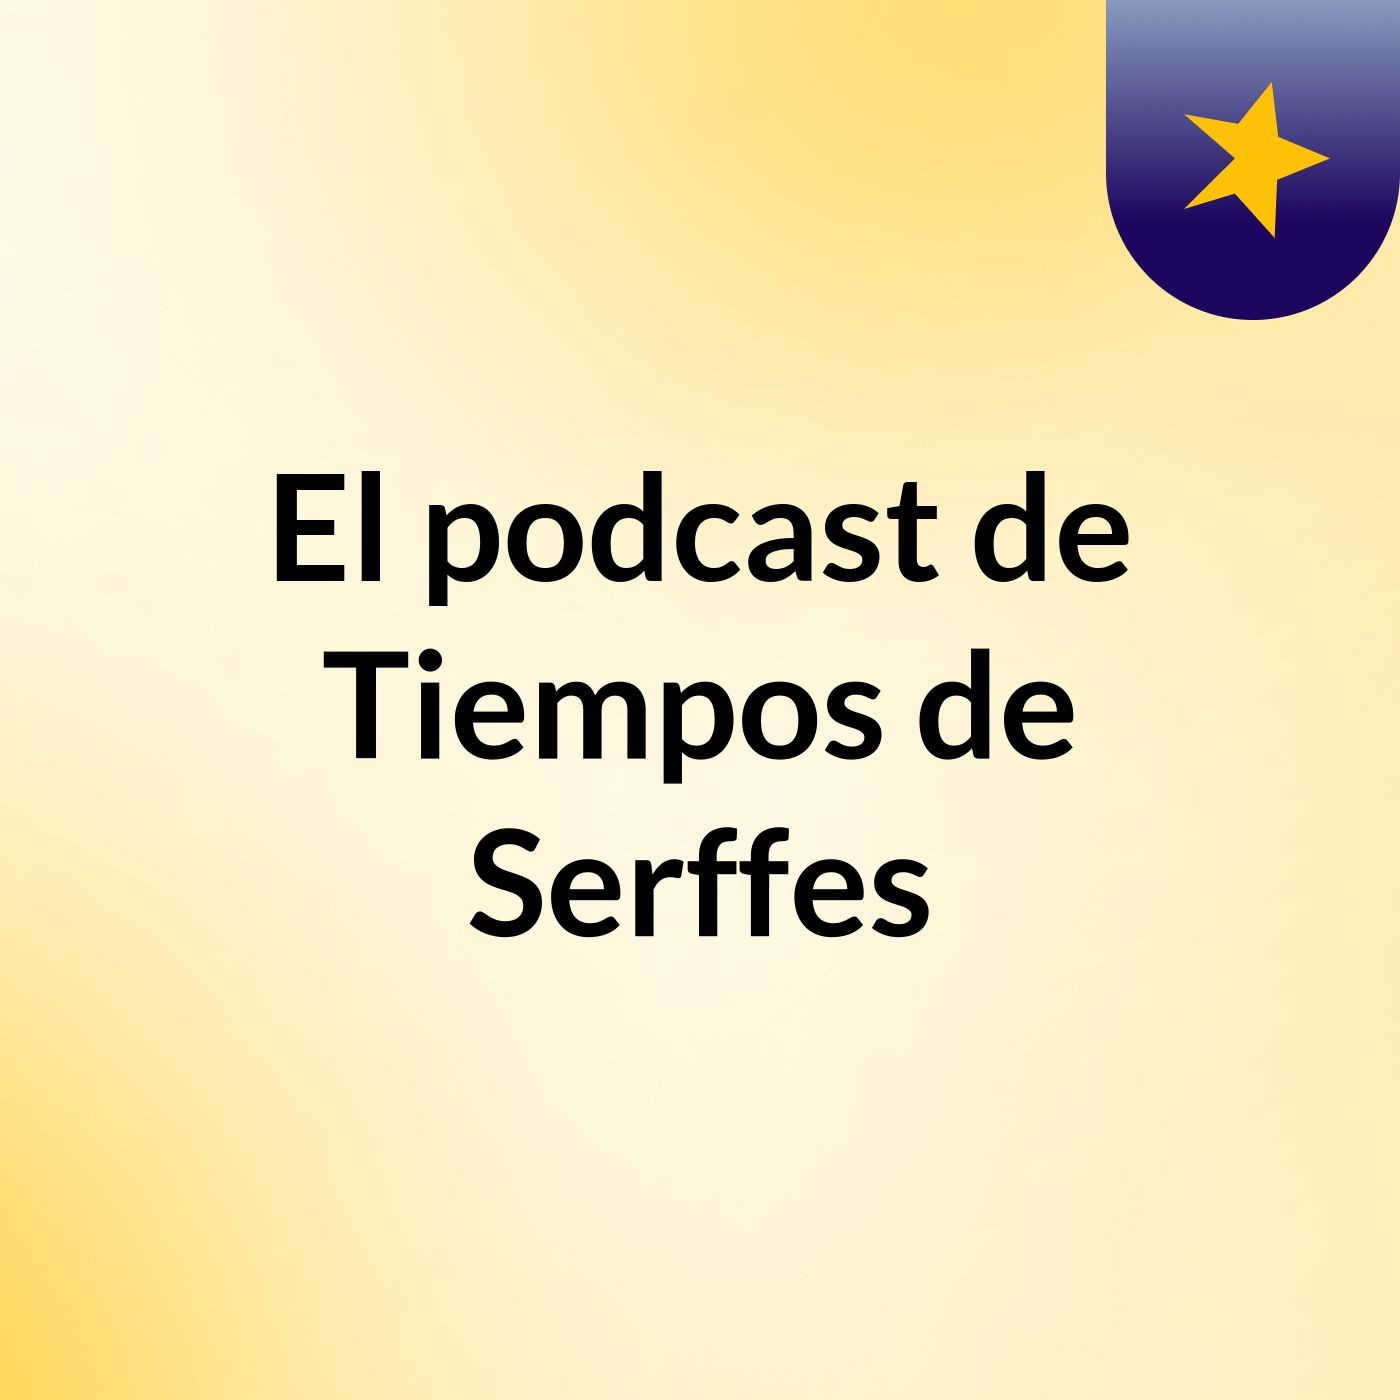 Episodio 36 - El podcast de Tiempos de Serffes